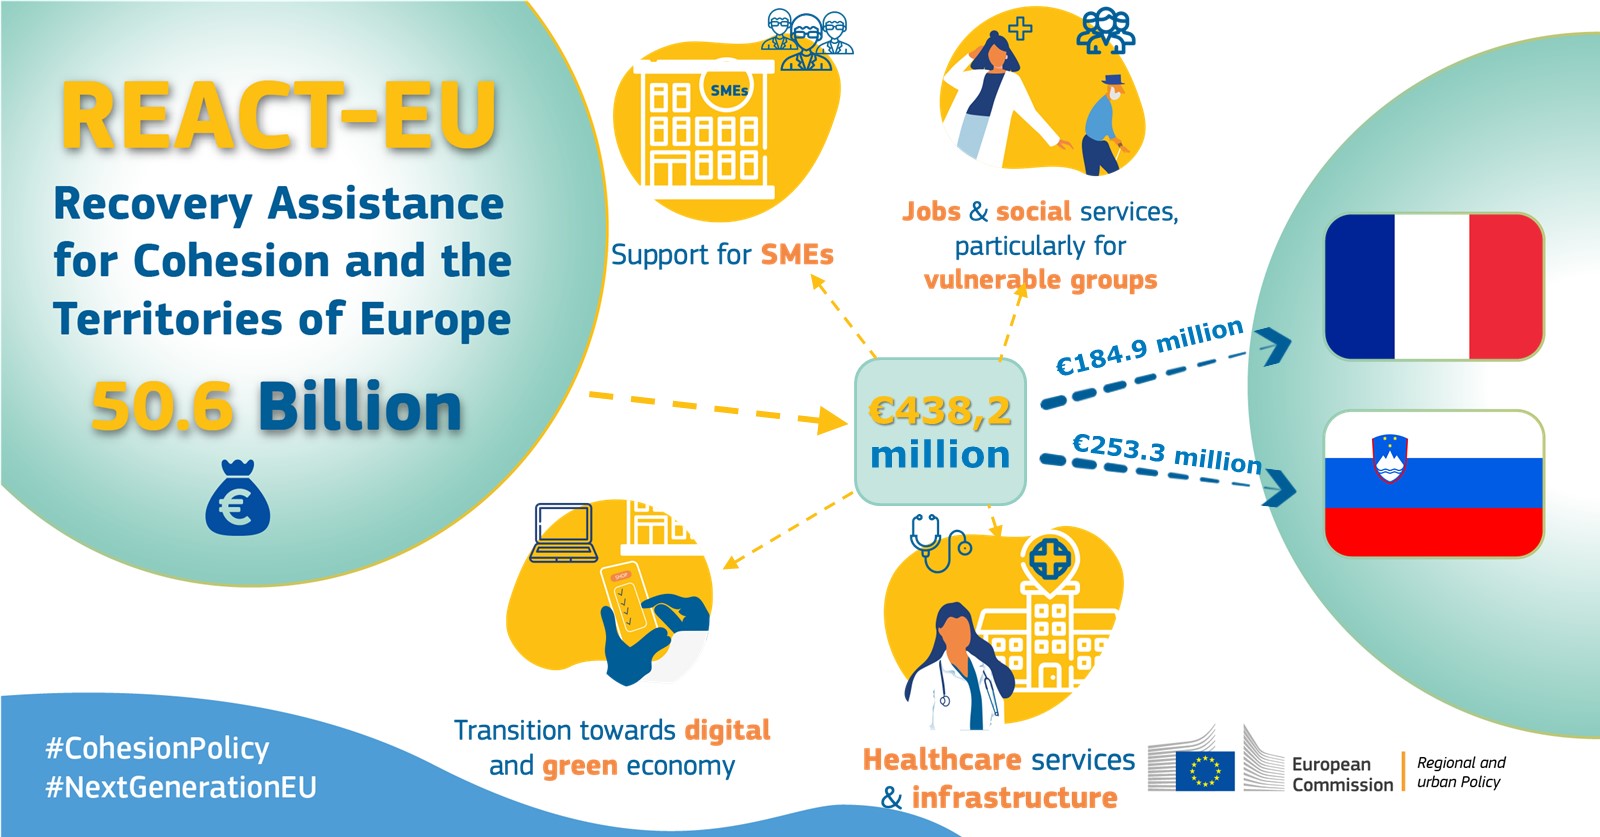 Evropska komisija bo Sloveniji in Franciji namenila dodatnih 438,2 milijonov evrov v okviru pobude REACT-EU.  – Politique régionale